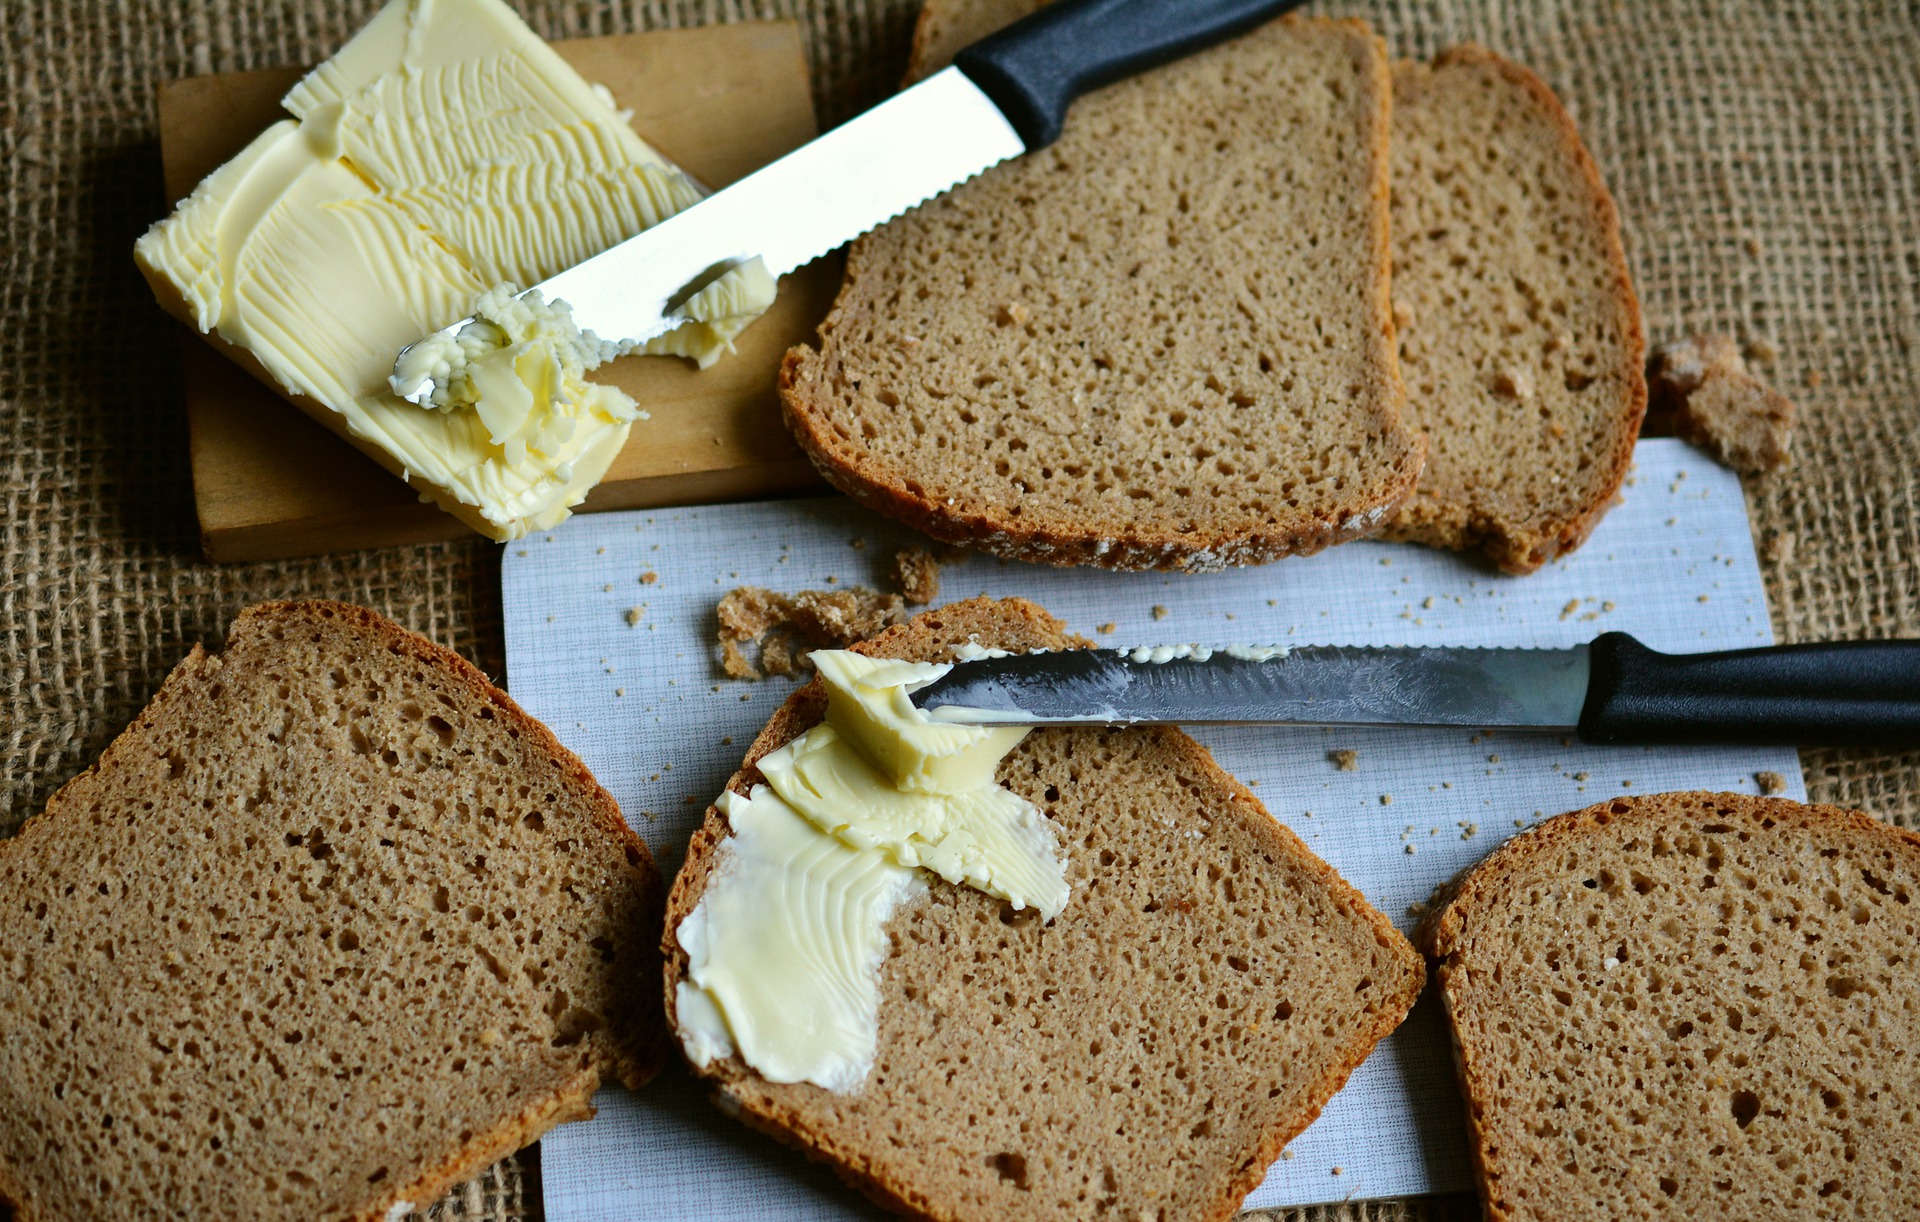 Хлеб с маслом можно есть. Бутерброд с маслом. Хлеб с маслом. Бутерброд хлеб с маслом. Сливочное масло на хлебе.